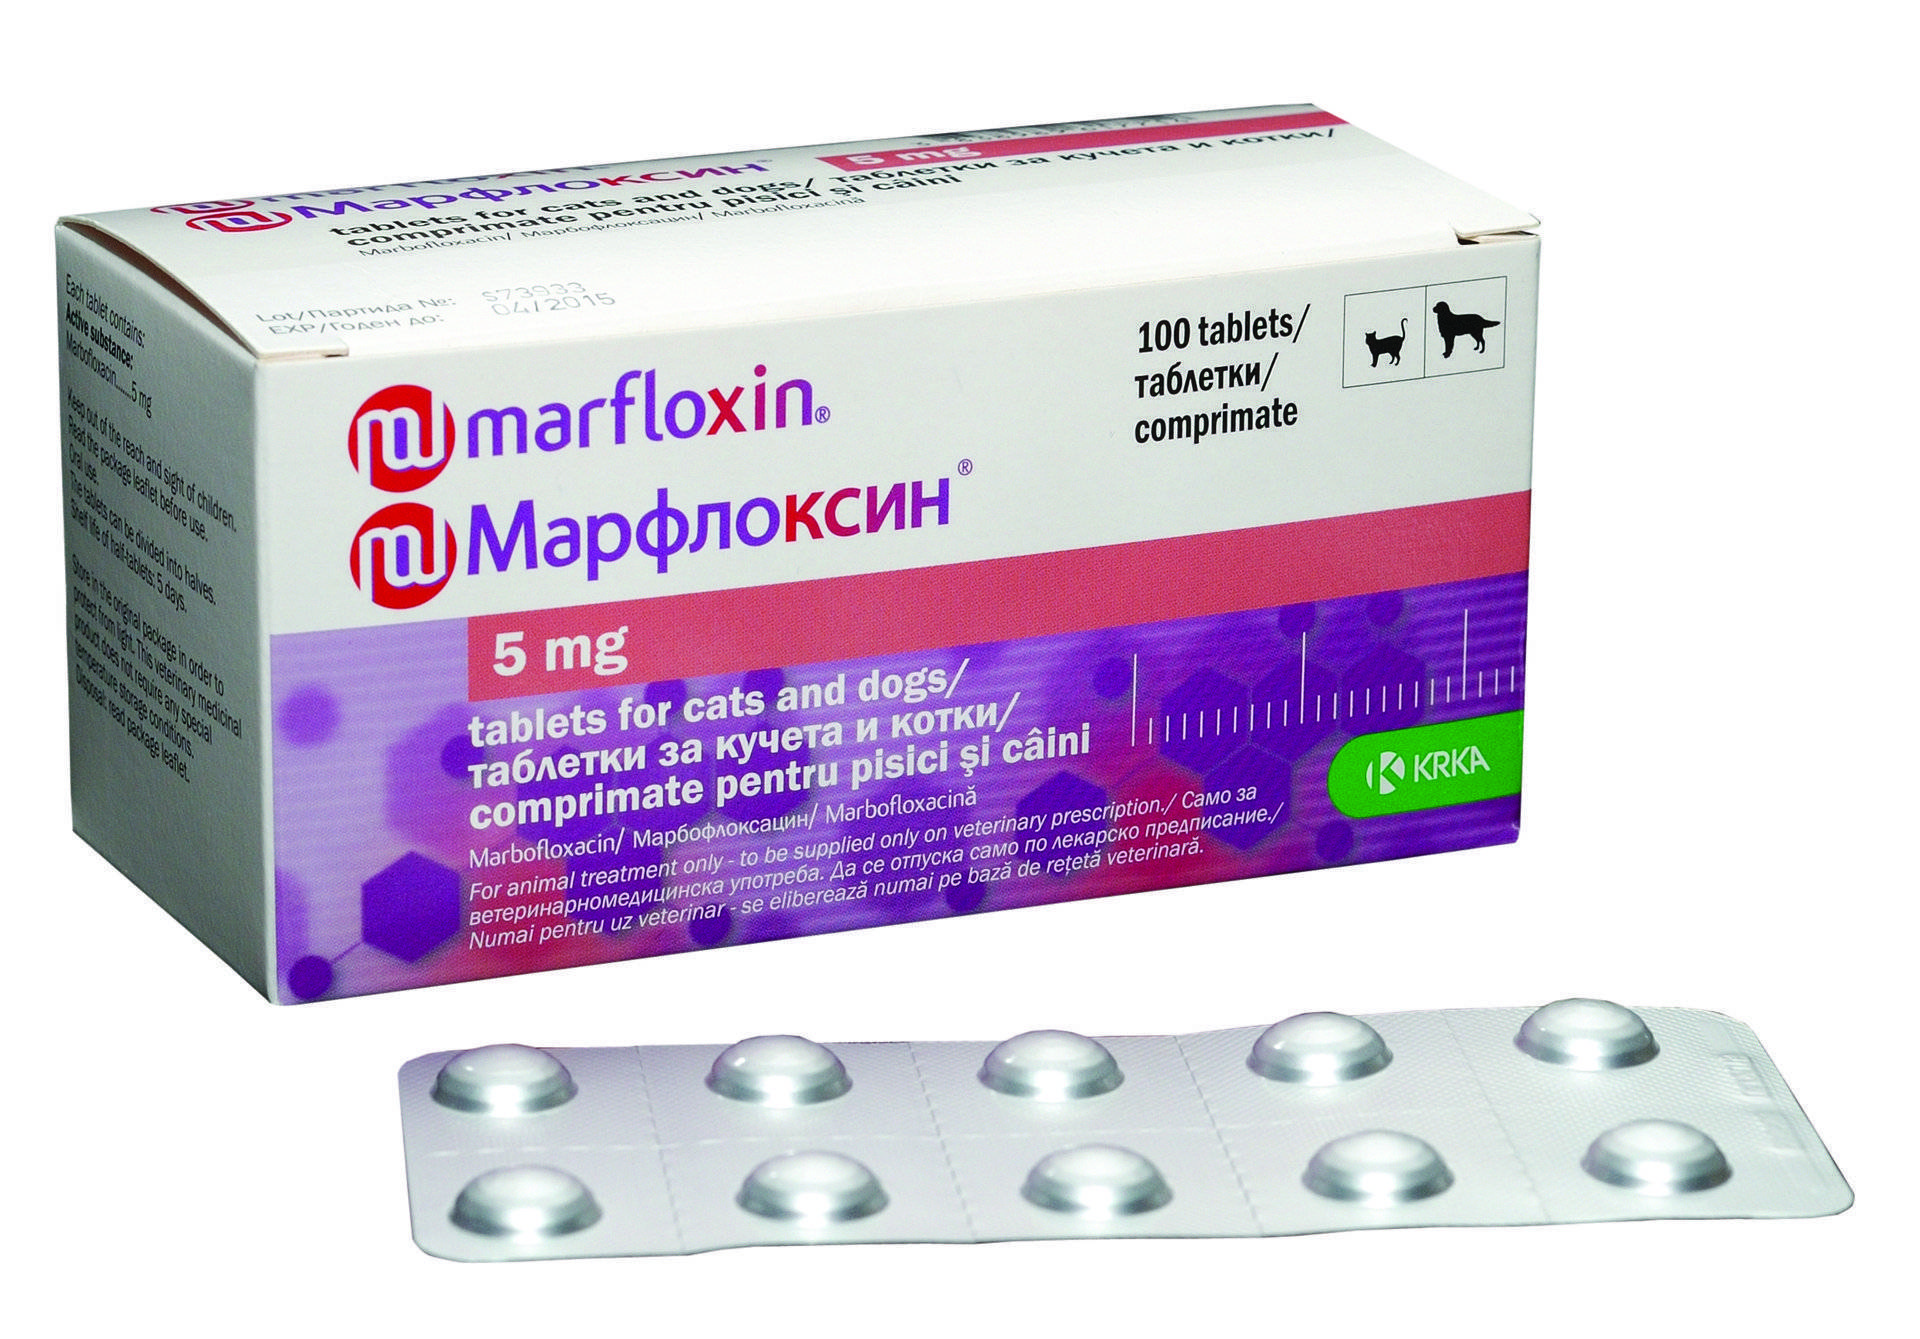 Антибактериальный препарат марфлоксин 2% раствор для инъекций, krka